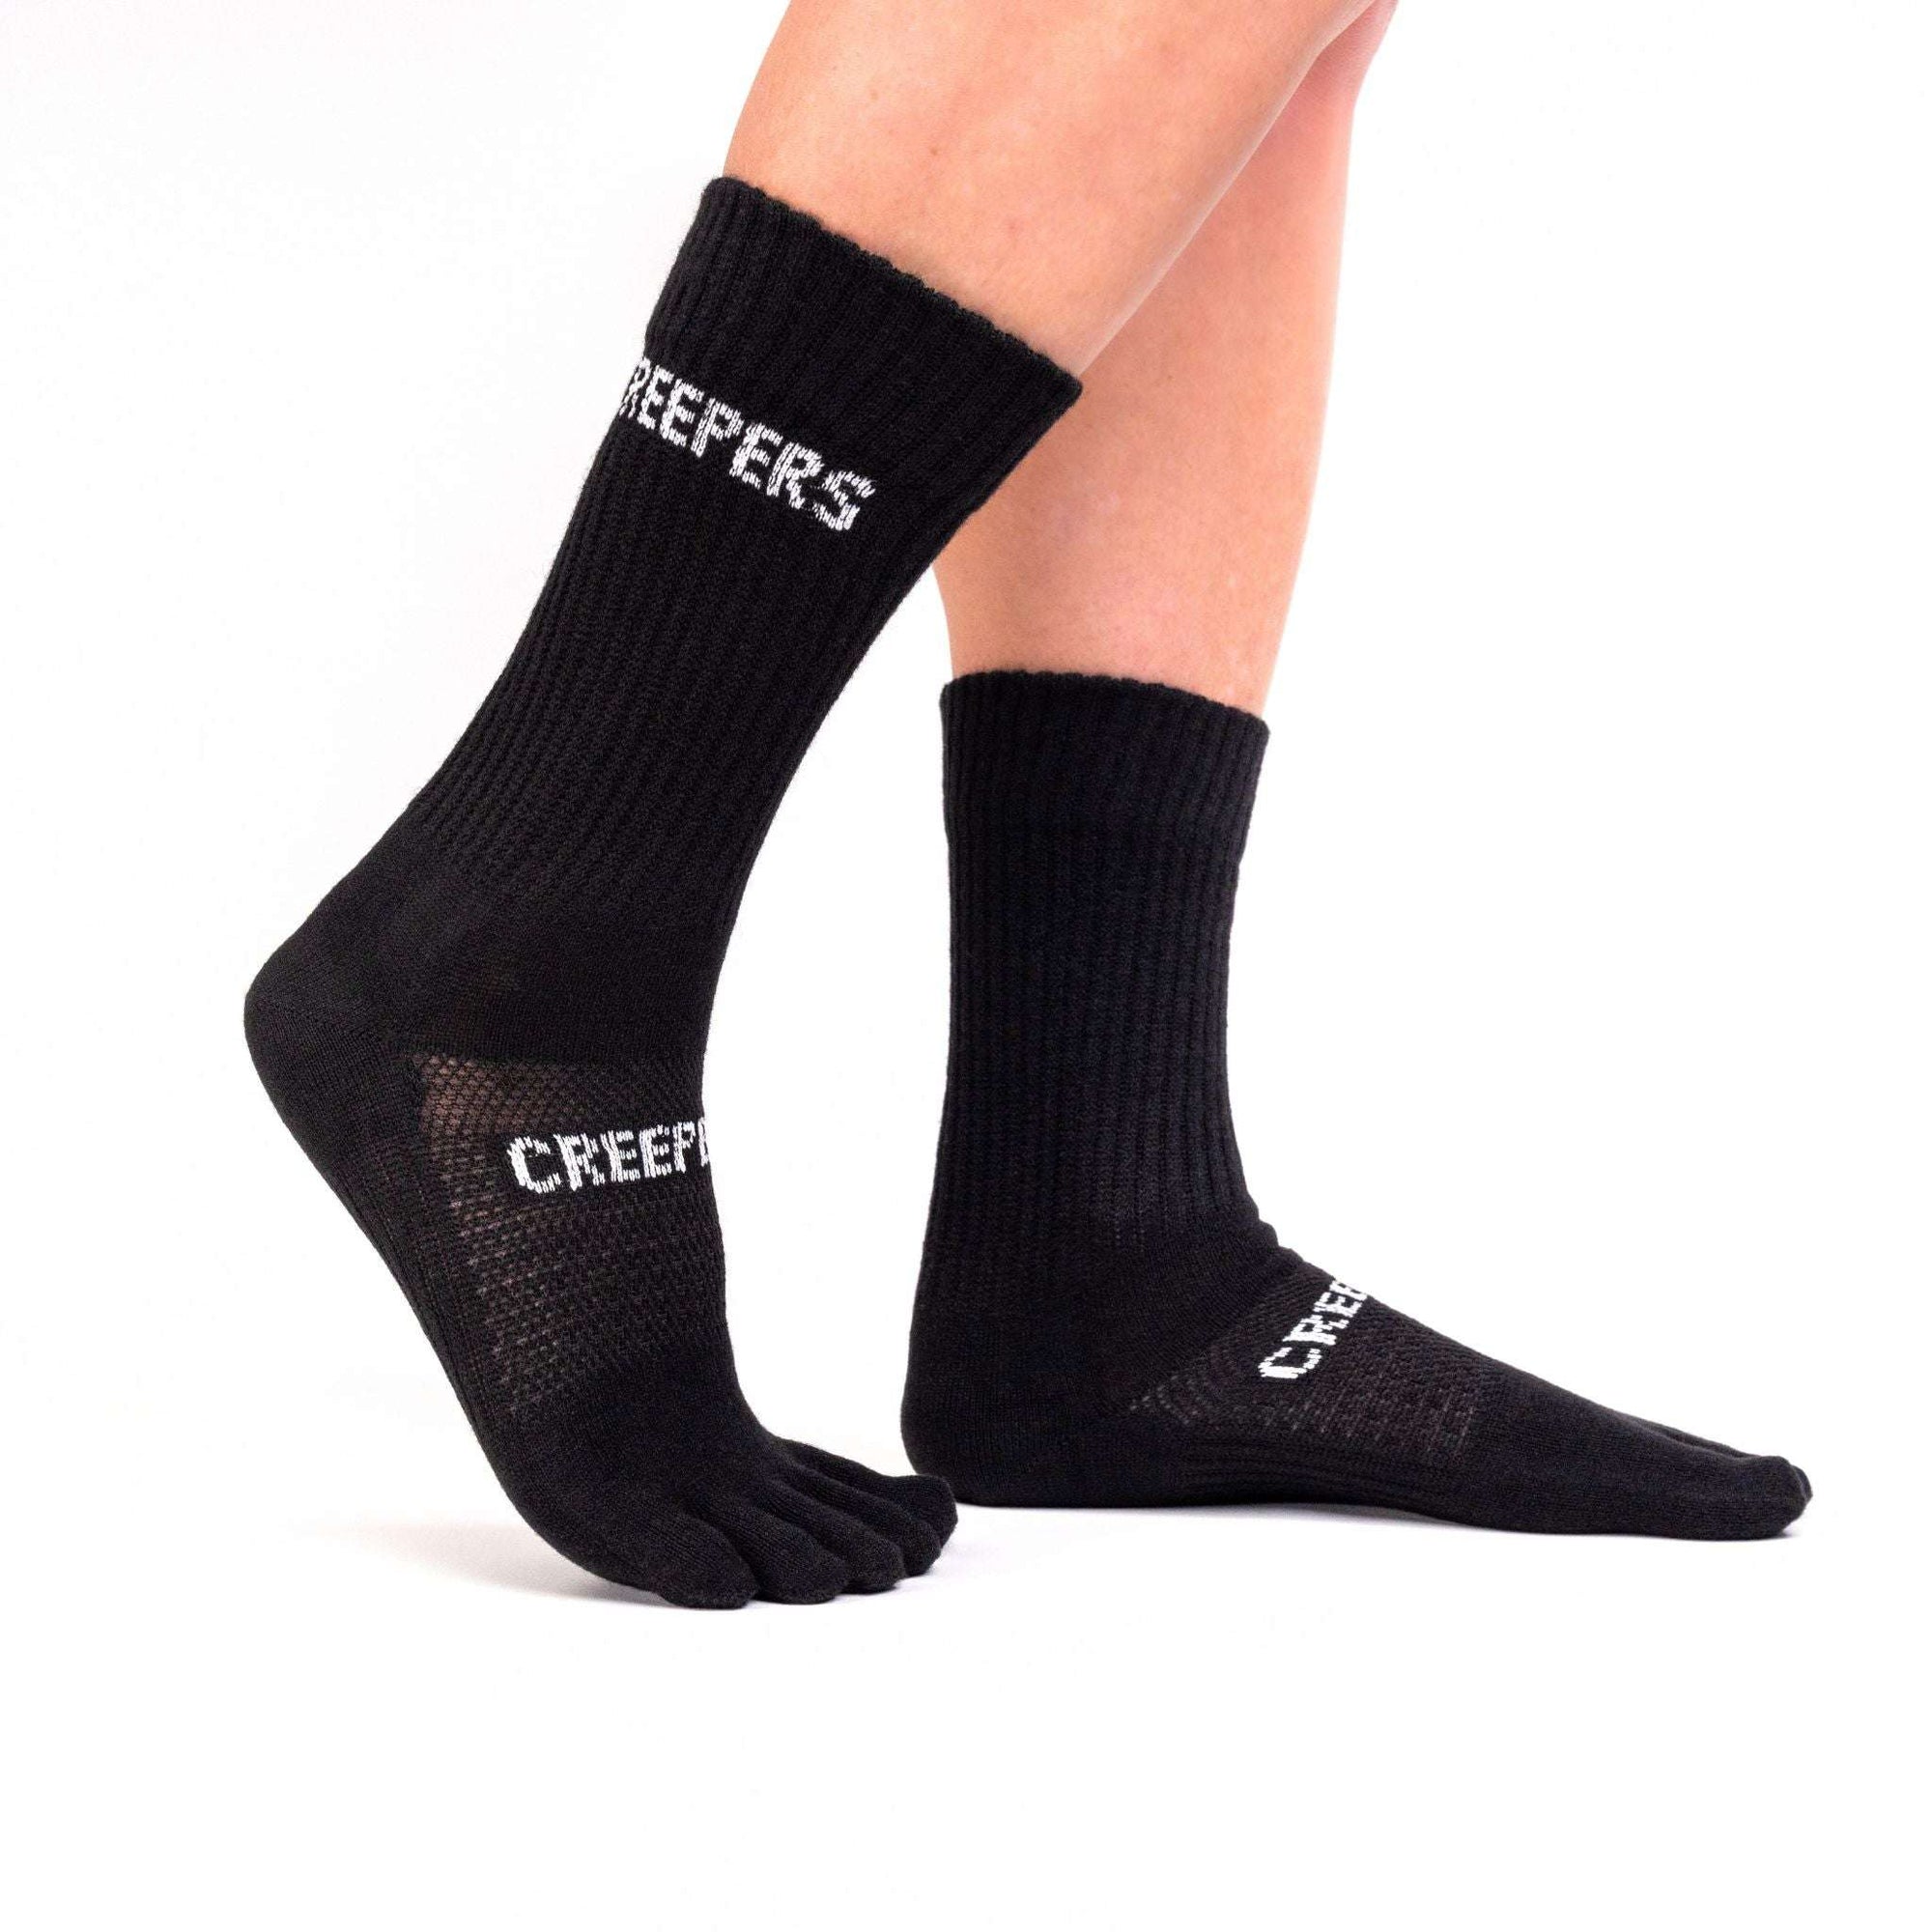 merino tool toe socks for running and hiking